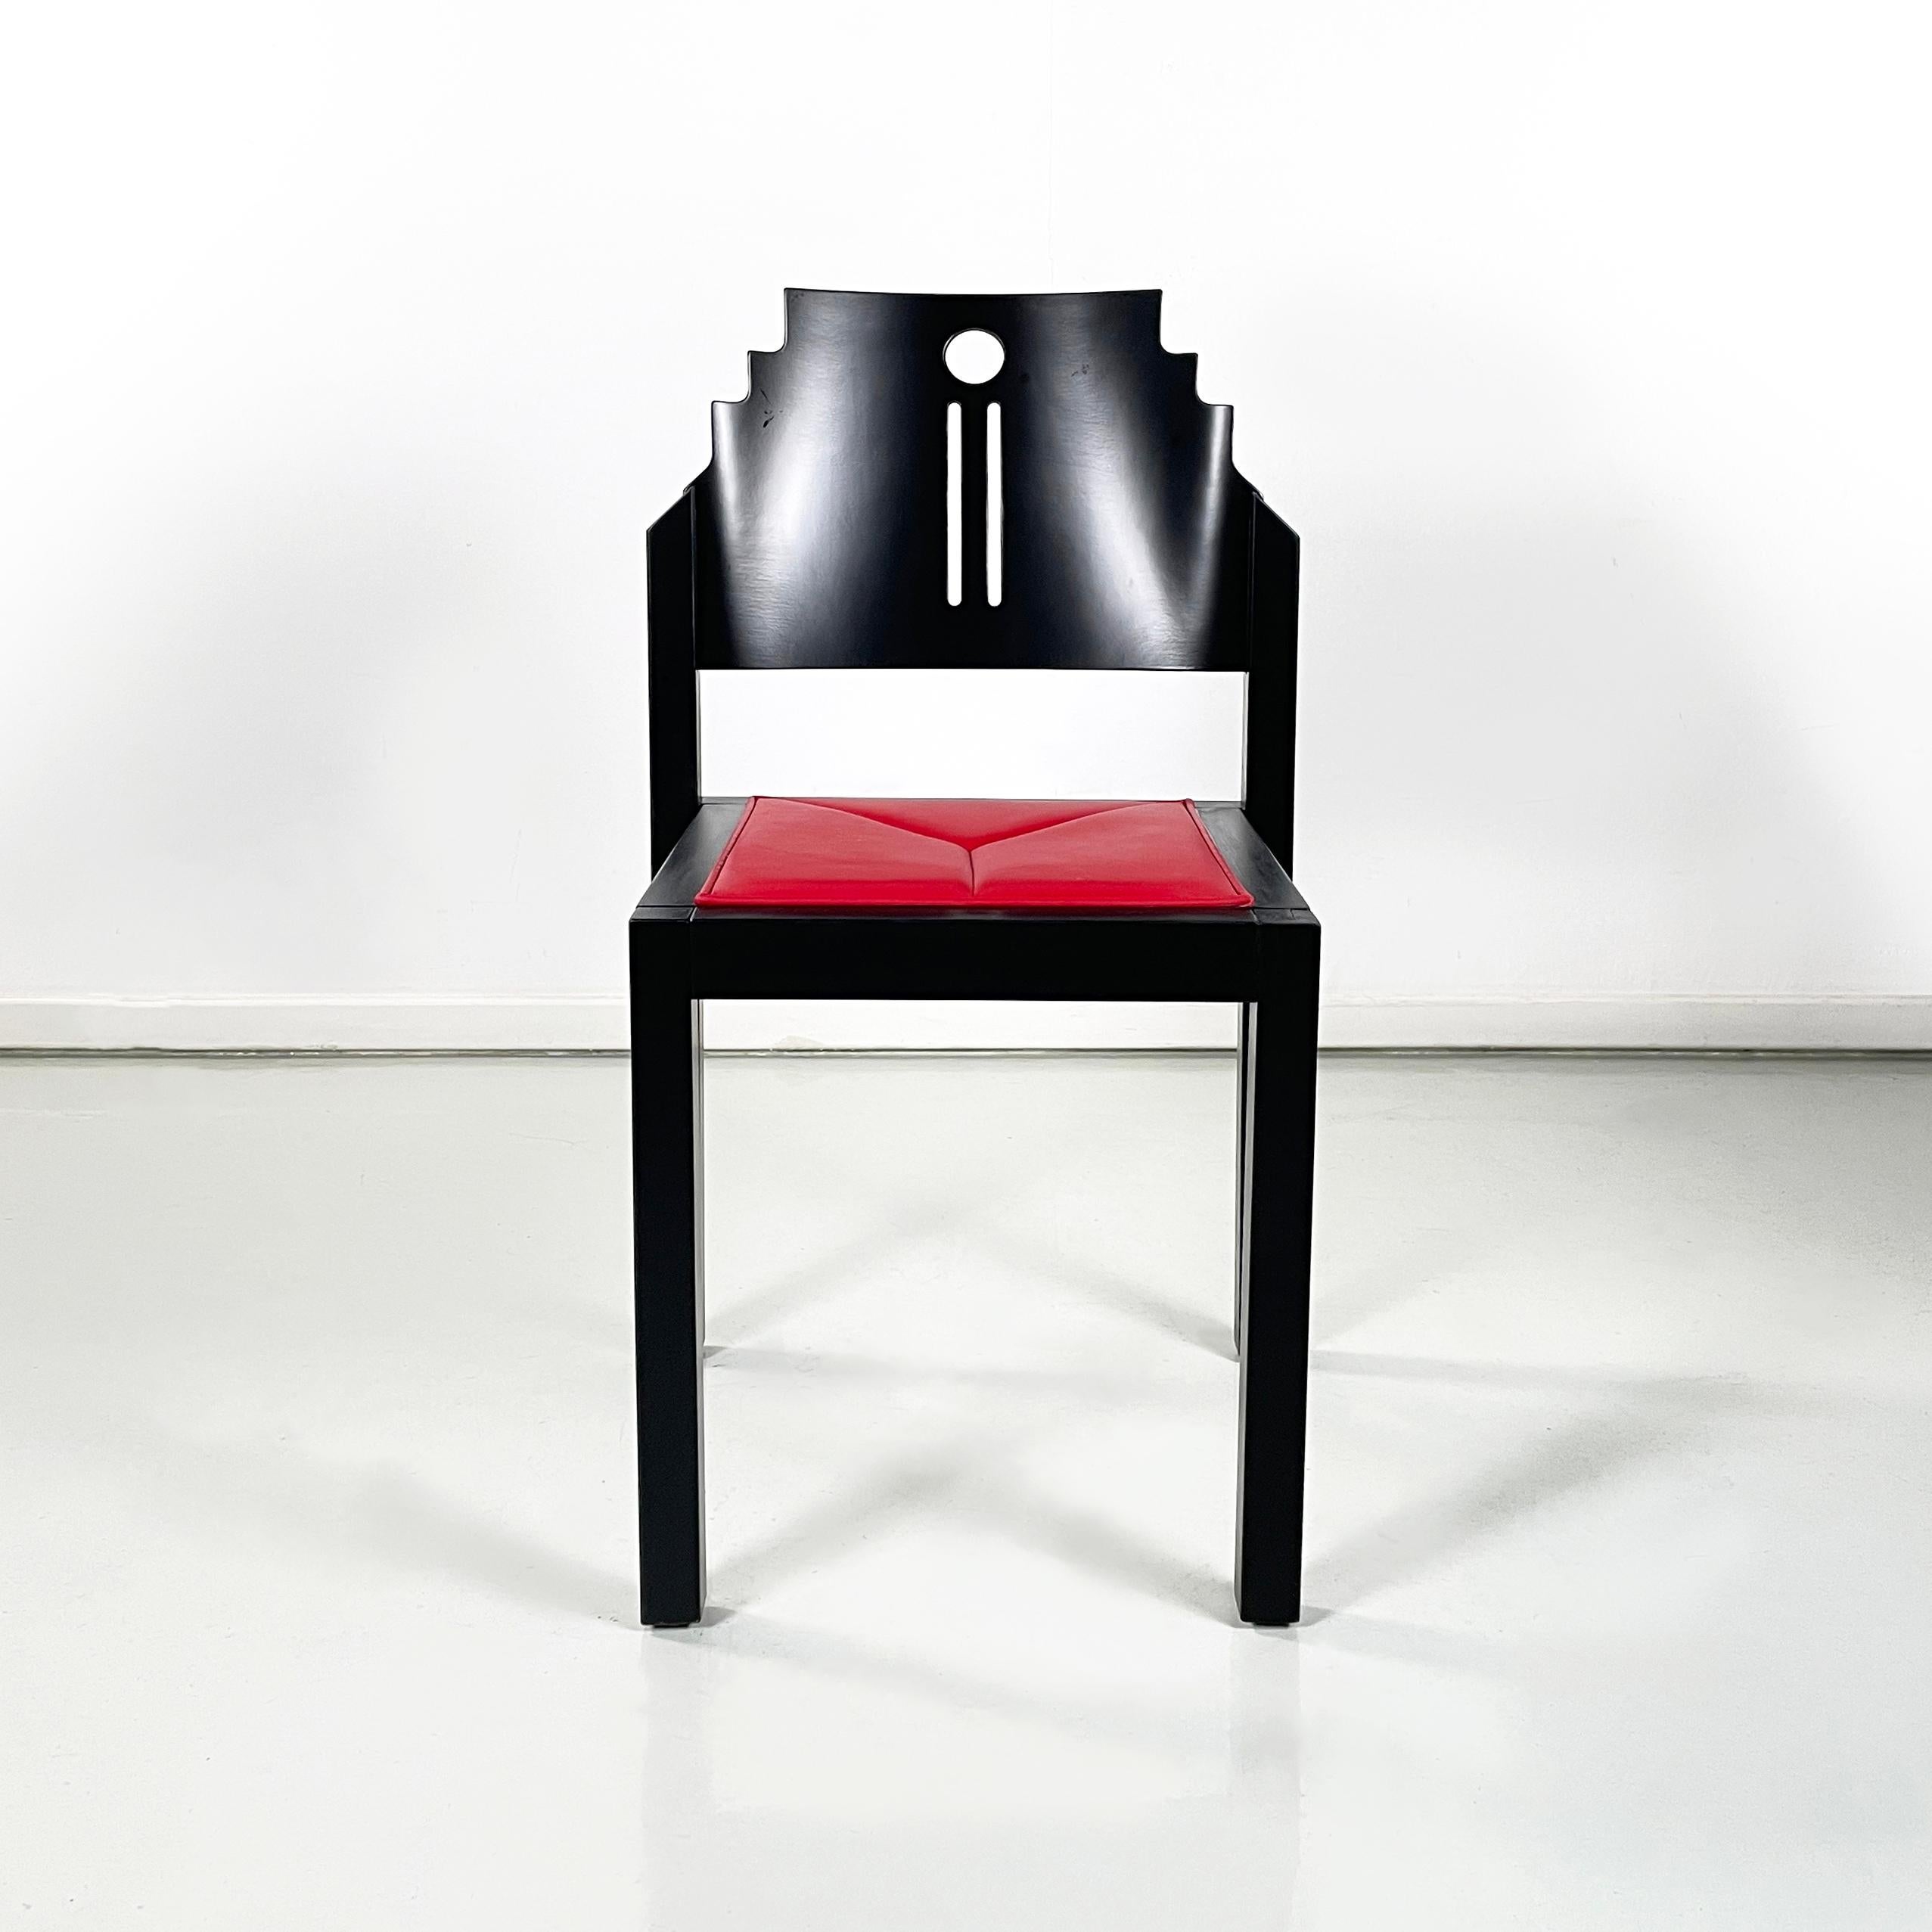 Chaises modernes autrichiennes en bois noir et cuir rouge par Thonet, années 1990
Paire de chaises à assise carrée, recouvertes de cuir rouge vif et de cuir de vachette.  avec structure en bois laqué noir, finition mate. Le dossier façonné et